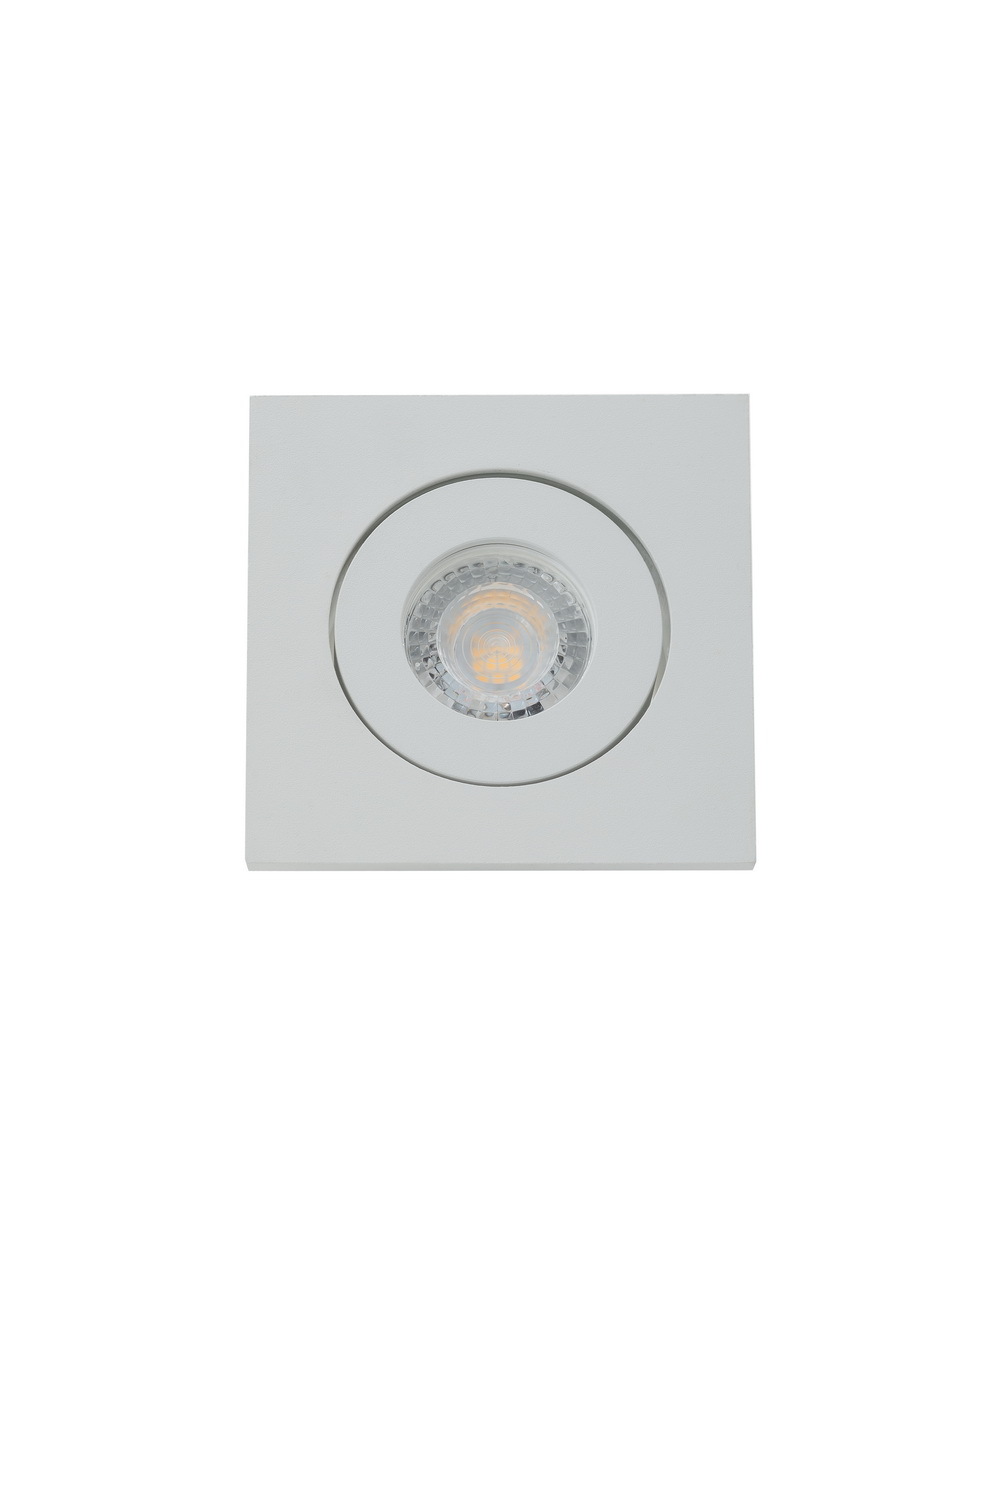 Встраиваемый светильник DK2021-WH